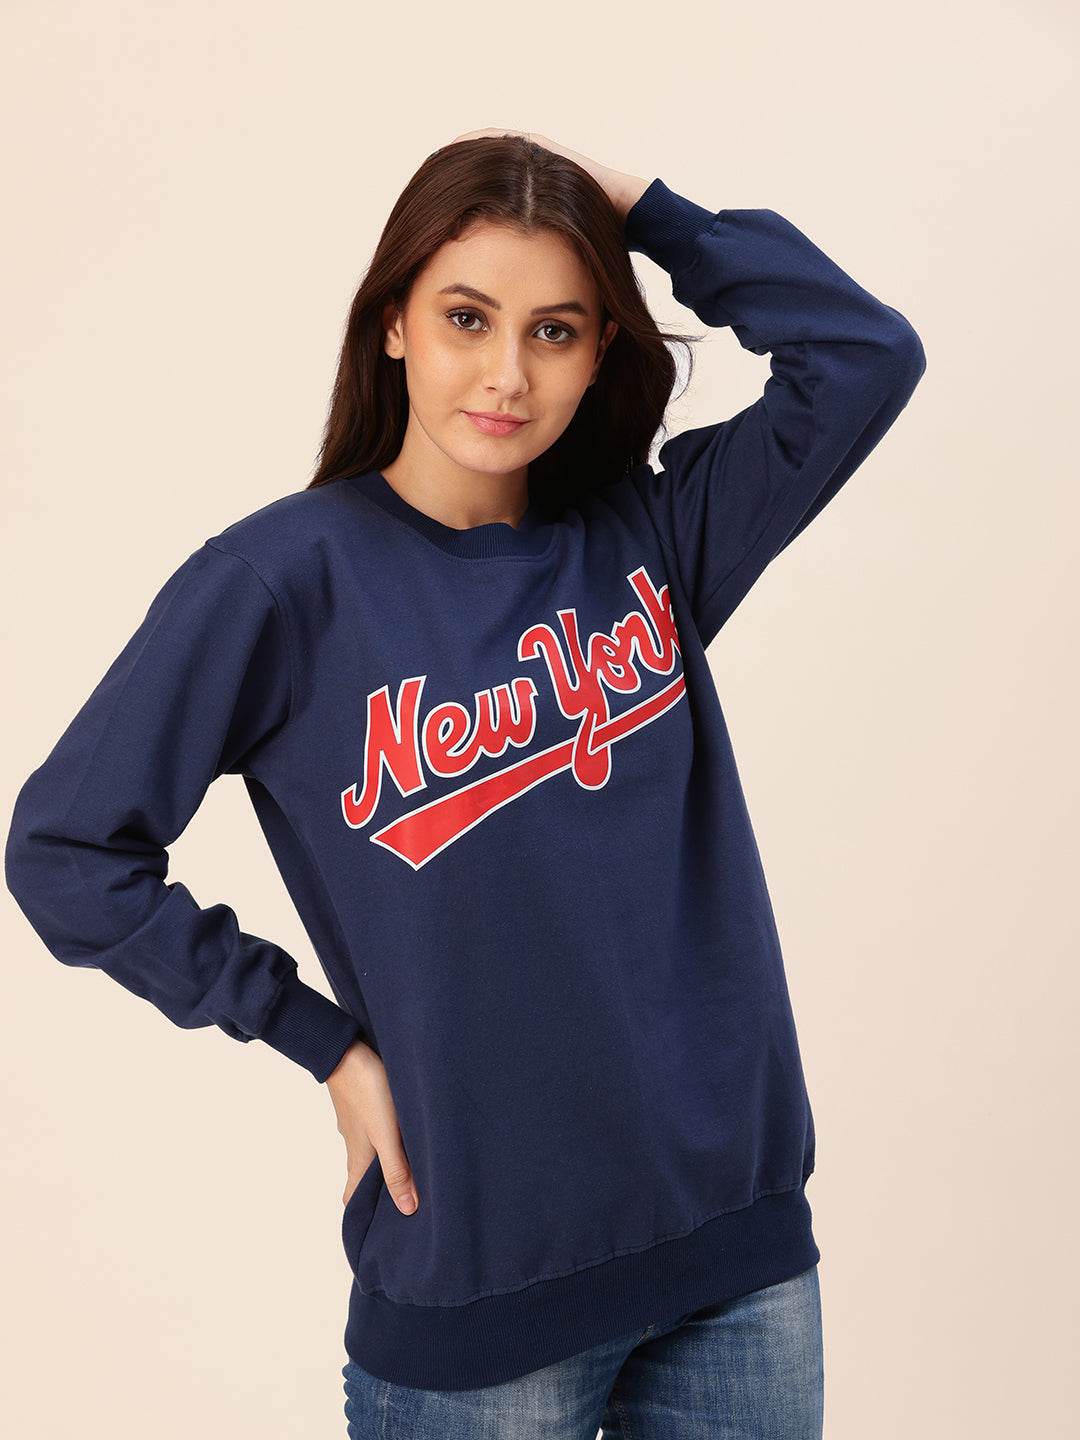 New York Navy Printed Sweatshirt